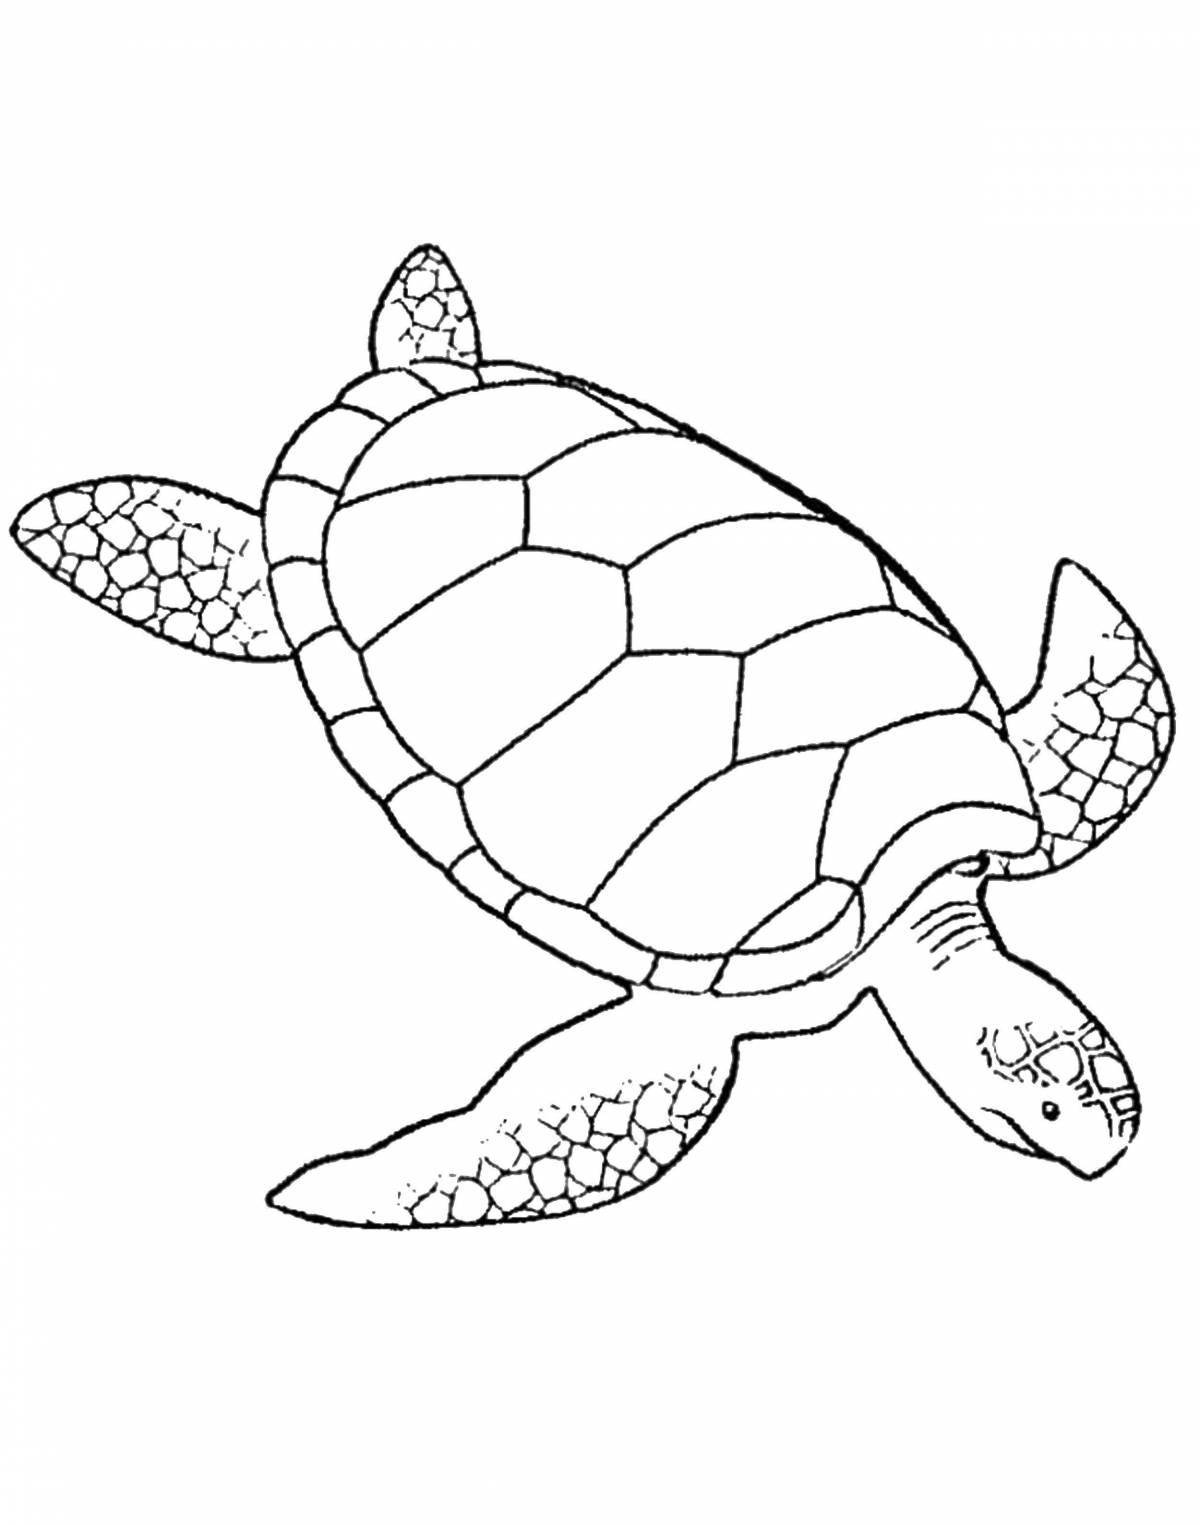 Раскраска радостная морская черепаха